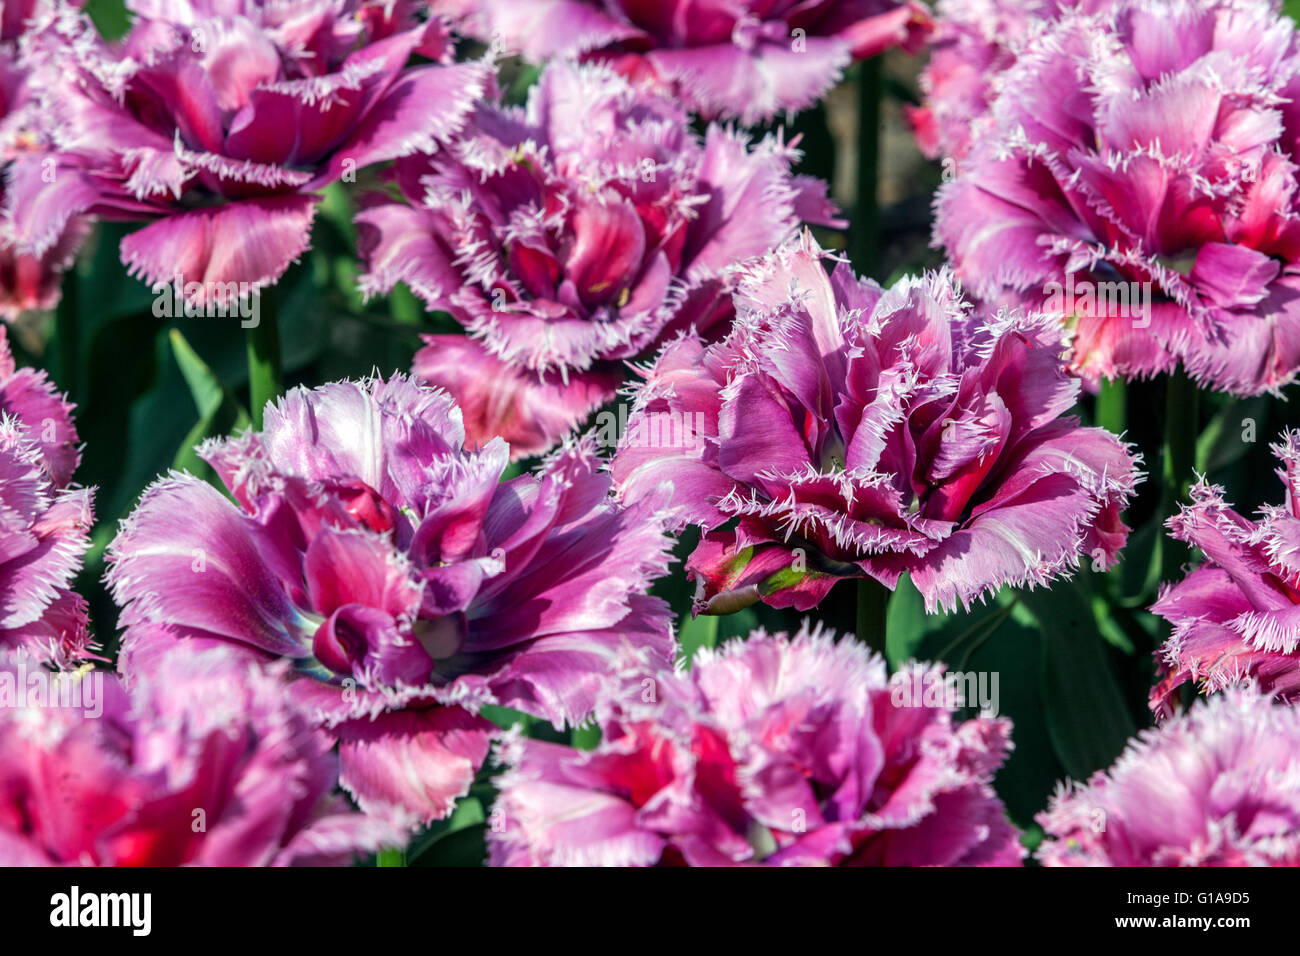 Fringed Tulips garden, Tulipa 'Matchpoint' Stock Photo